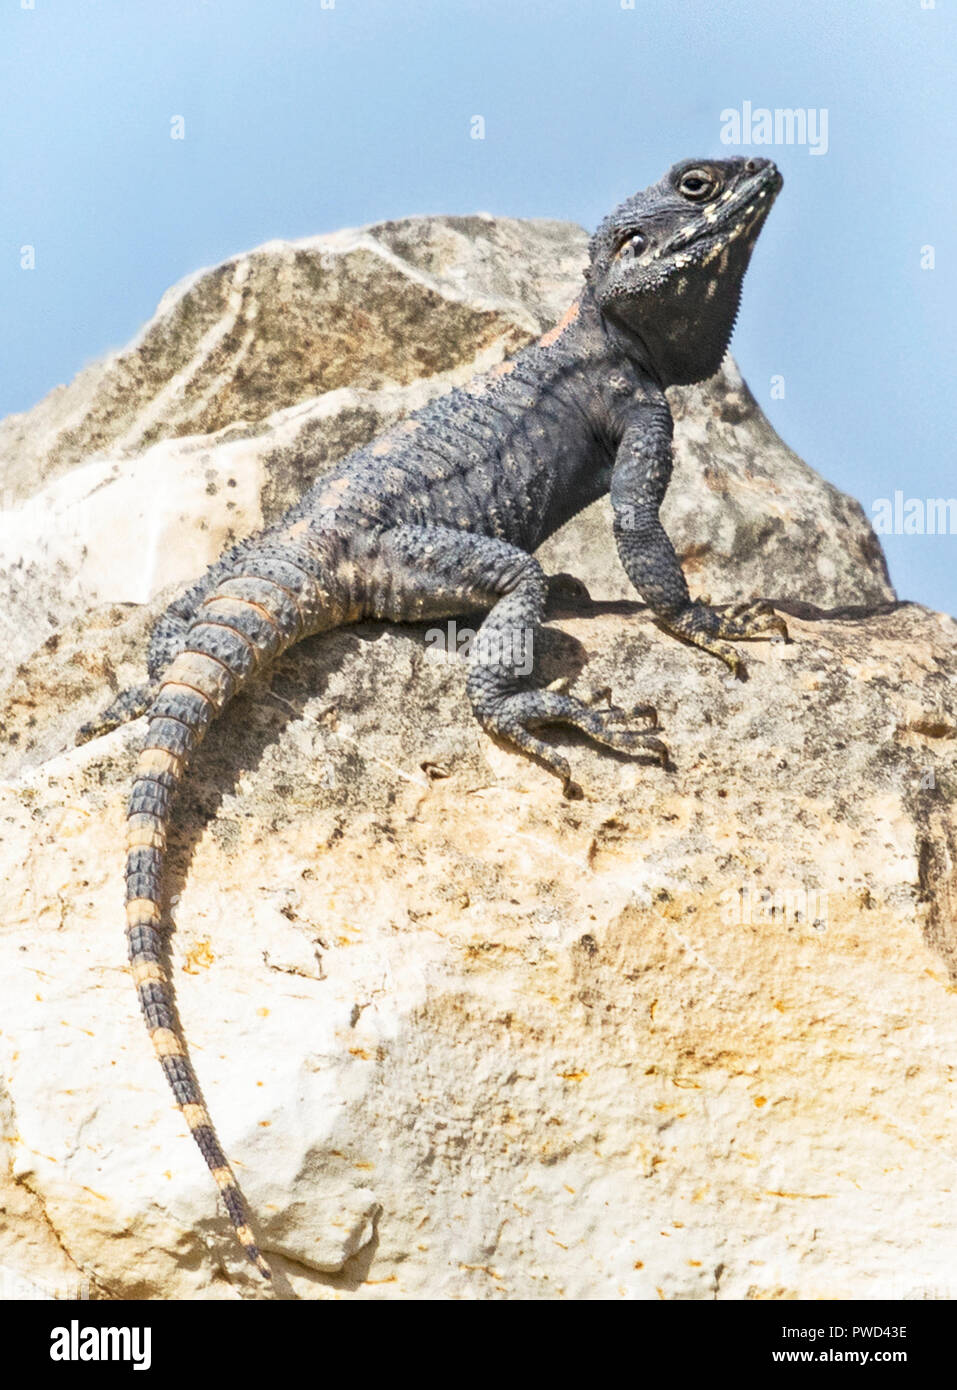 Un roughtail rock agama lizard su un masso visualizzazione di accoppiamento o comportamento territoriale Foto Stock